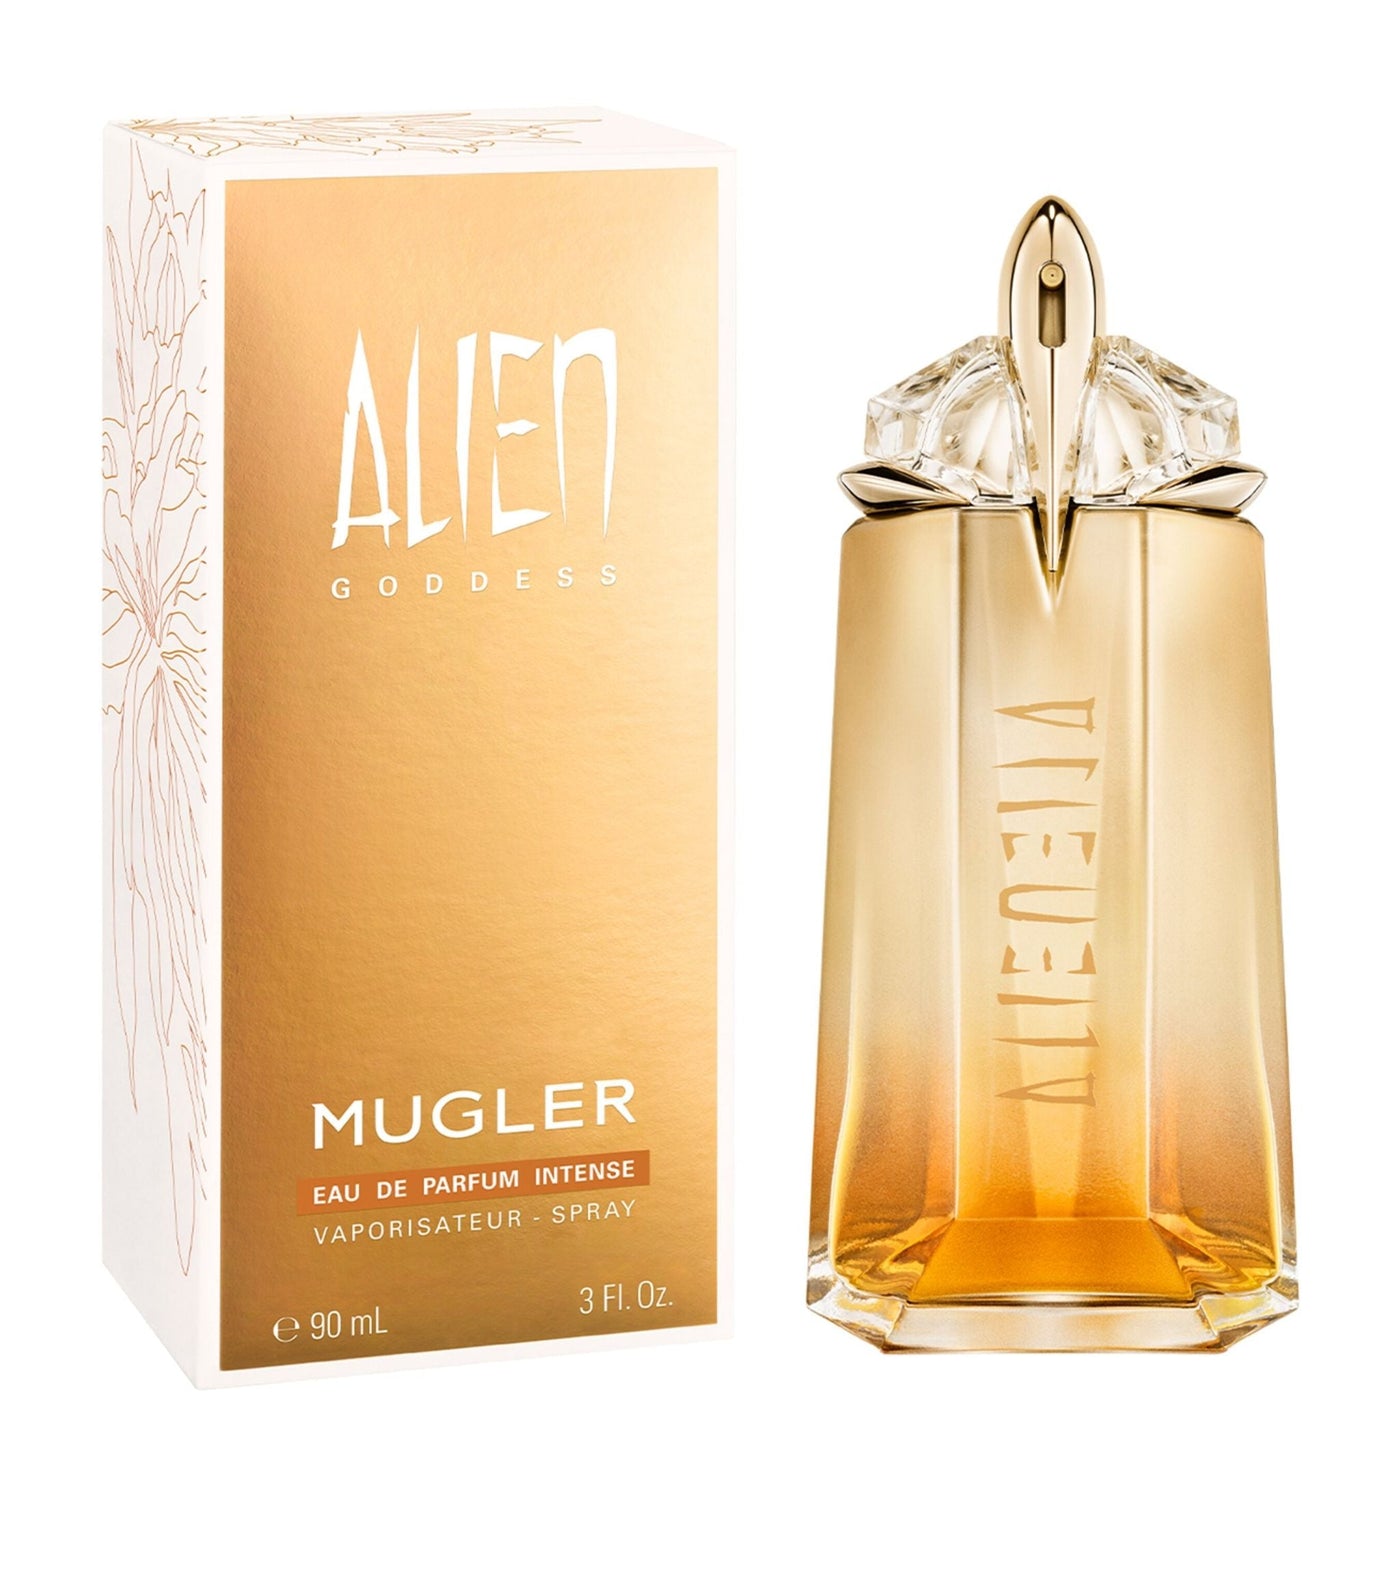 Mugler Angel For Women Eau De Toilette 100Ml